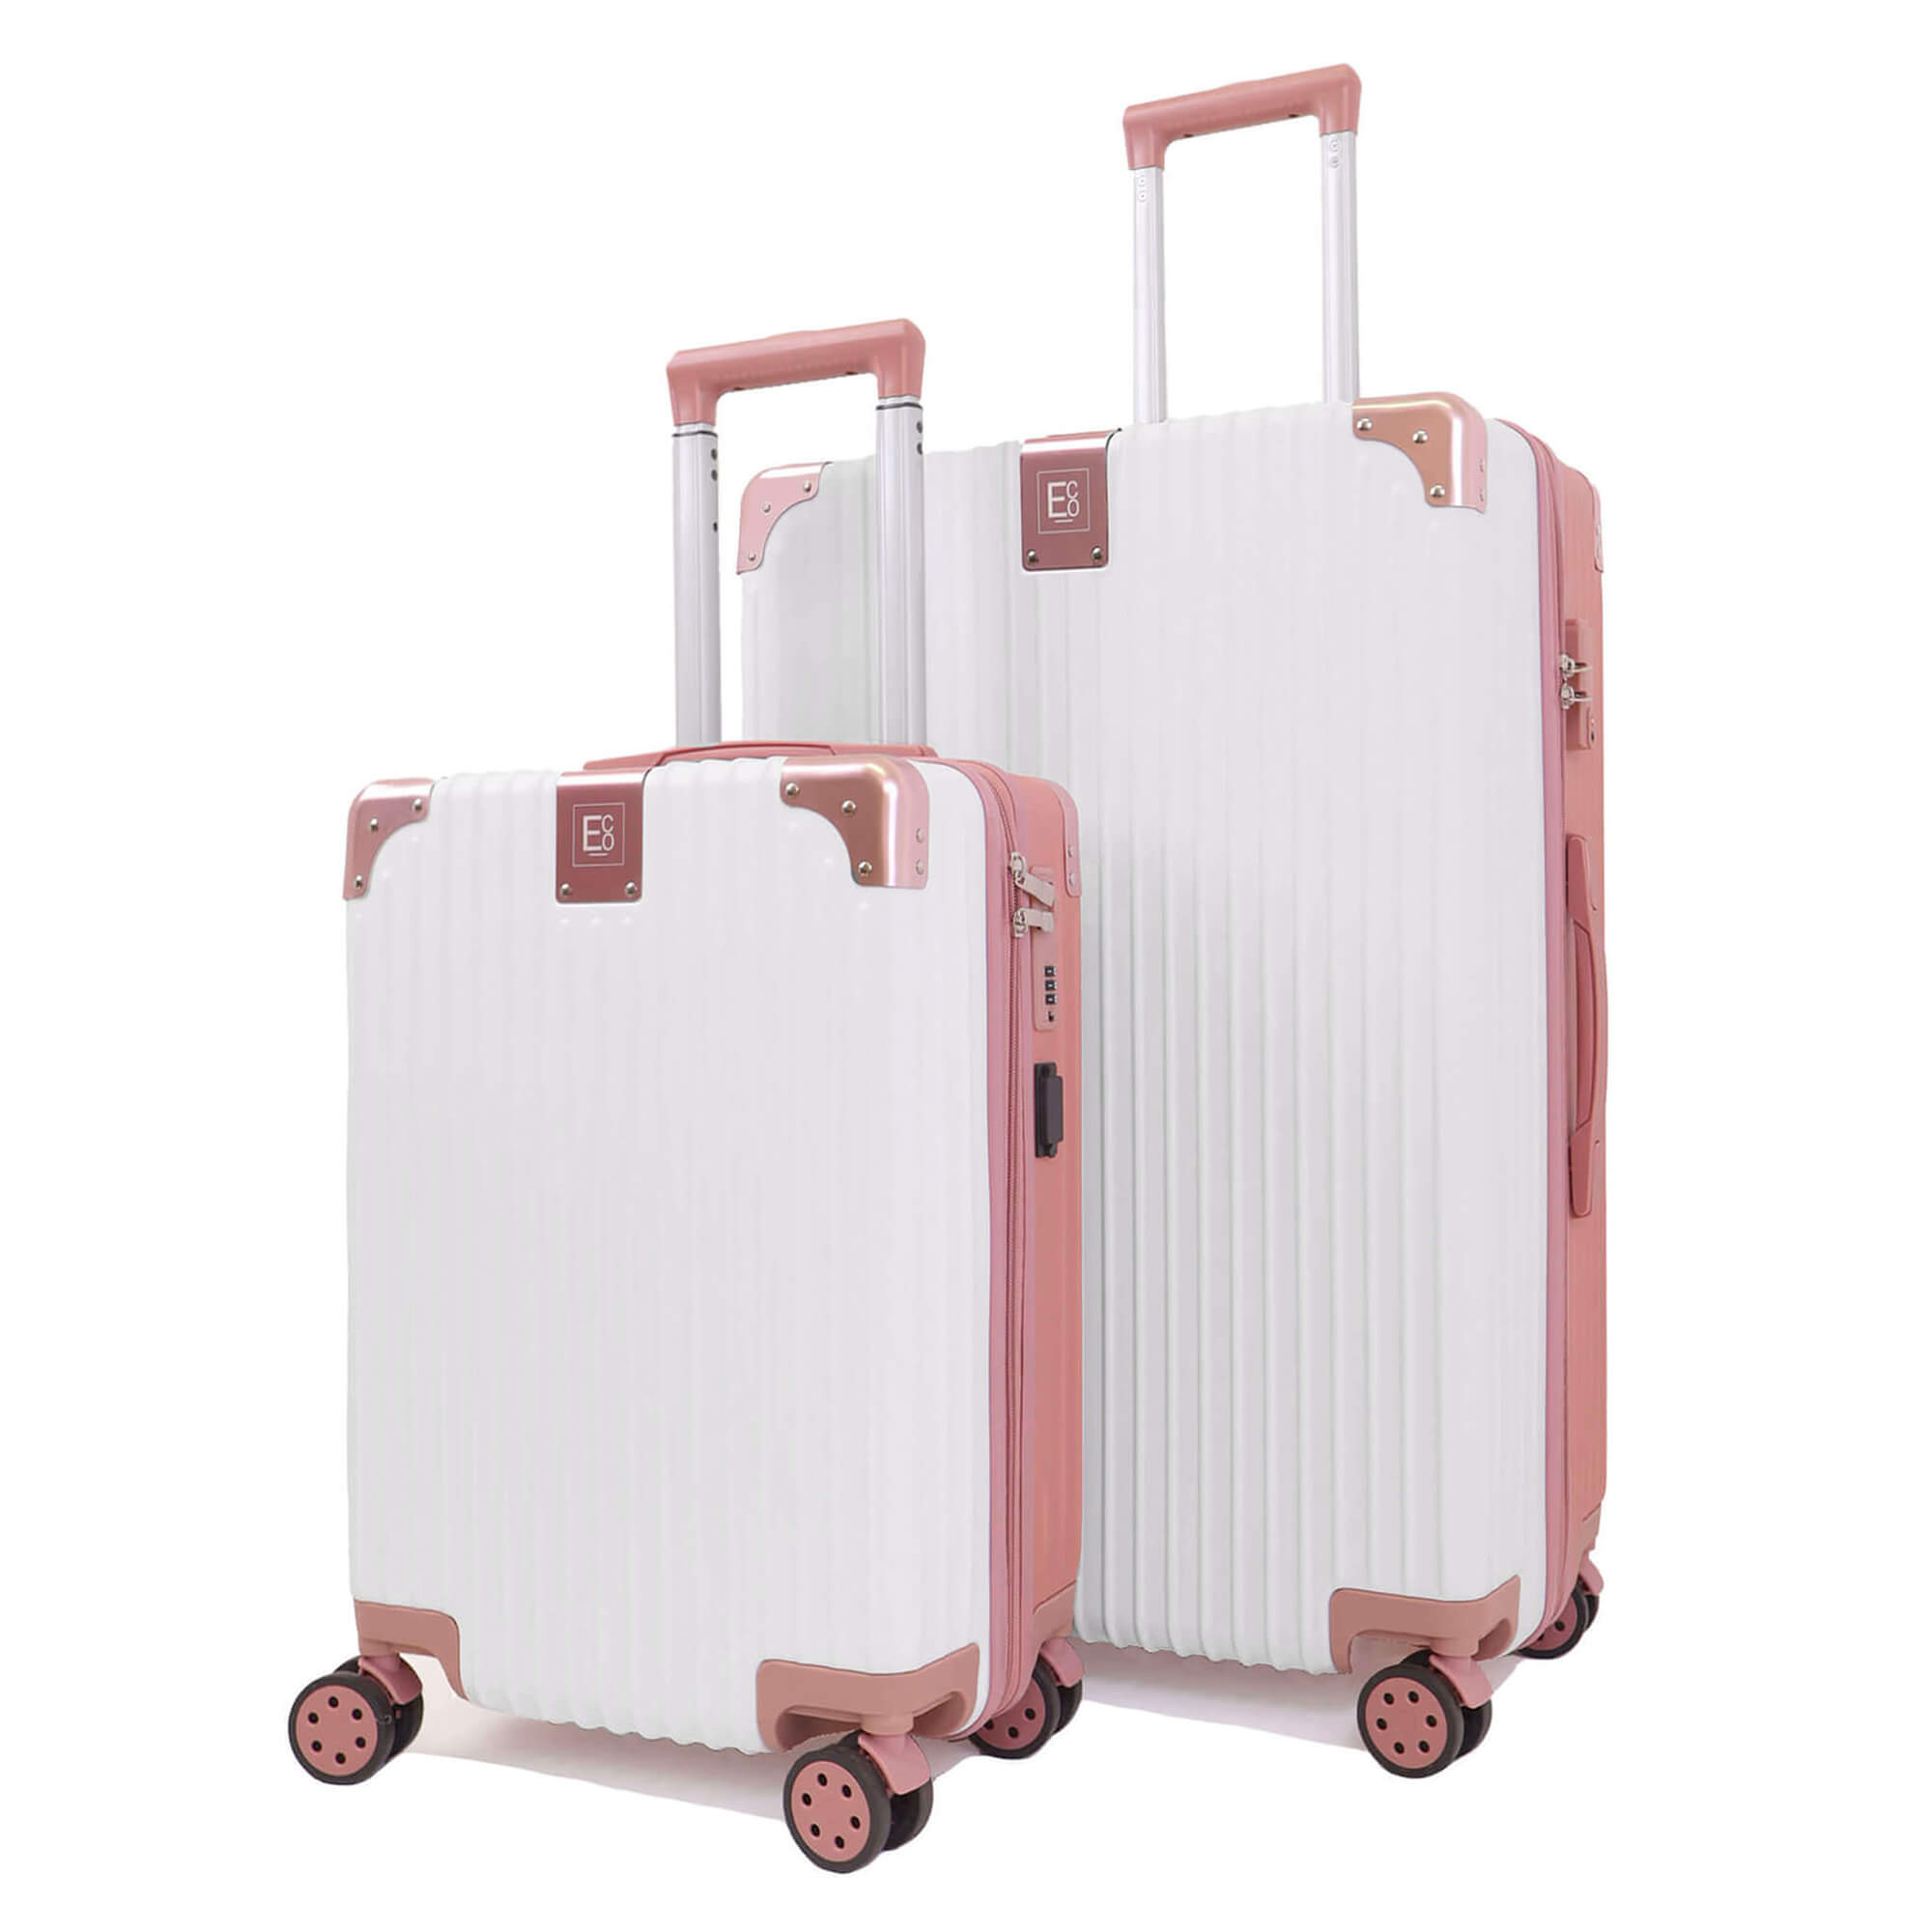 Valises à bagages avec poignée télescopique - 2 pièces - Berlin Design